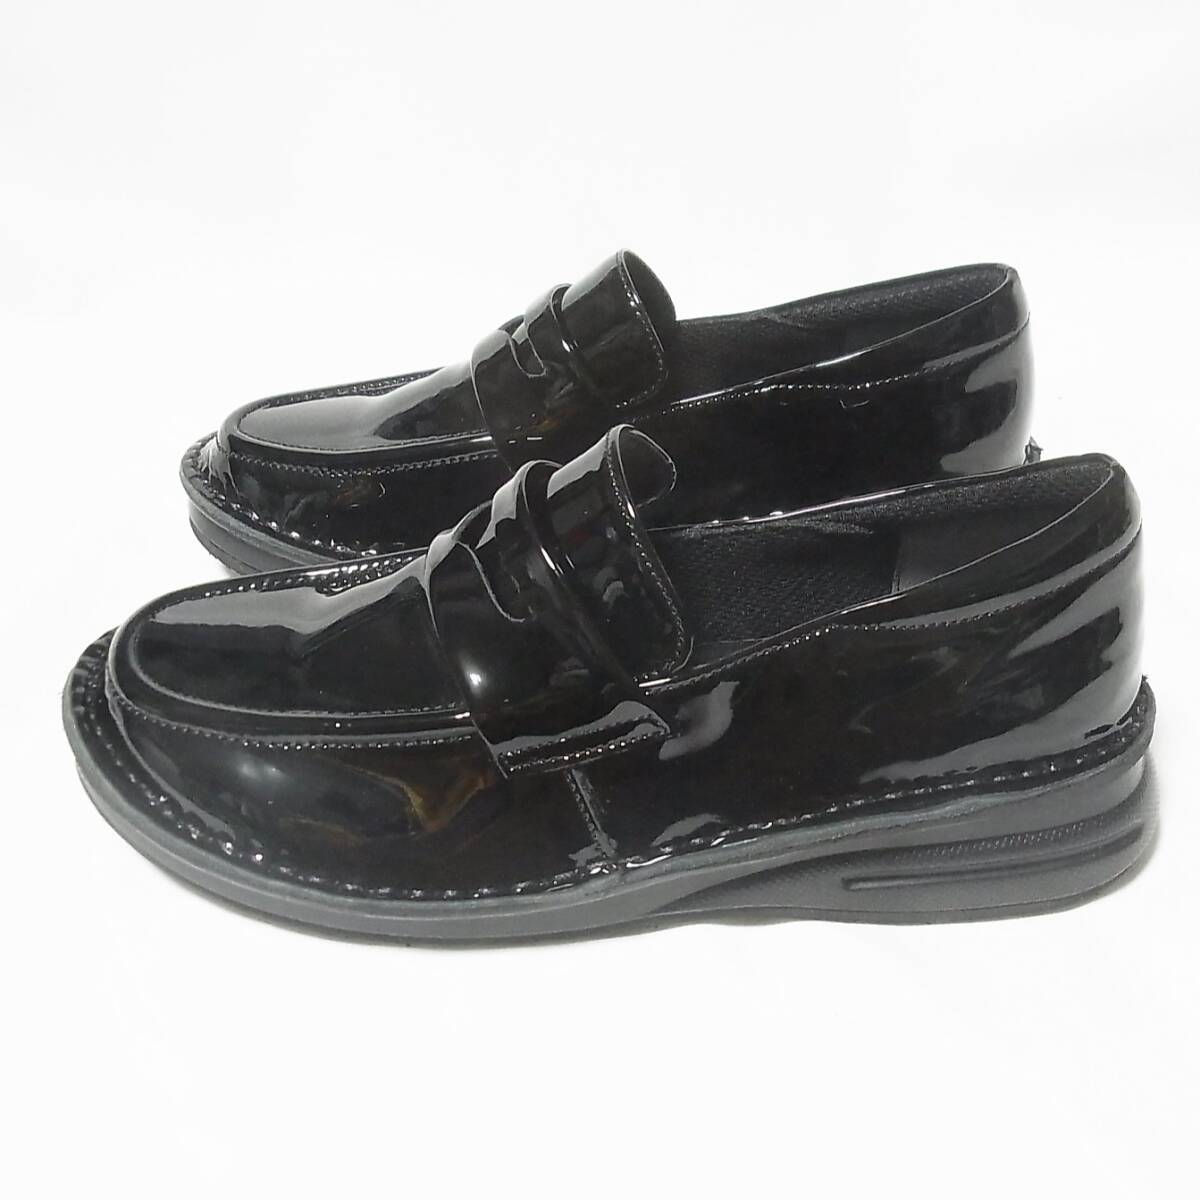  не использовался Dolce натуральный кожа сделано в Японии Loafer type Town обувь 22.5cm/ широкий 3E обычная цена 19250 иен действующий товар *Doruche чёрный кожа мягкость * спортивные туфли 